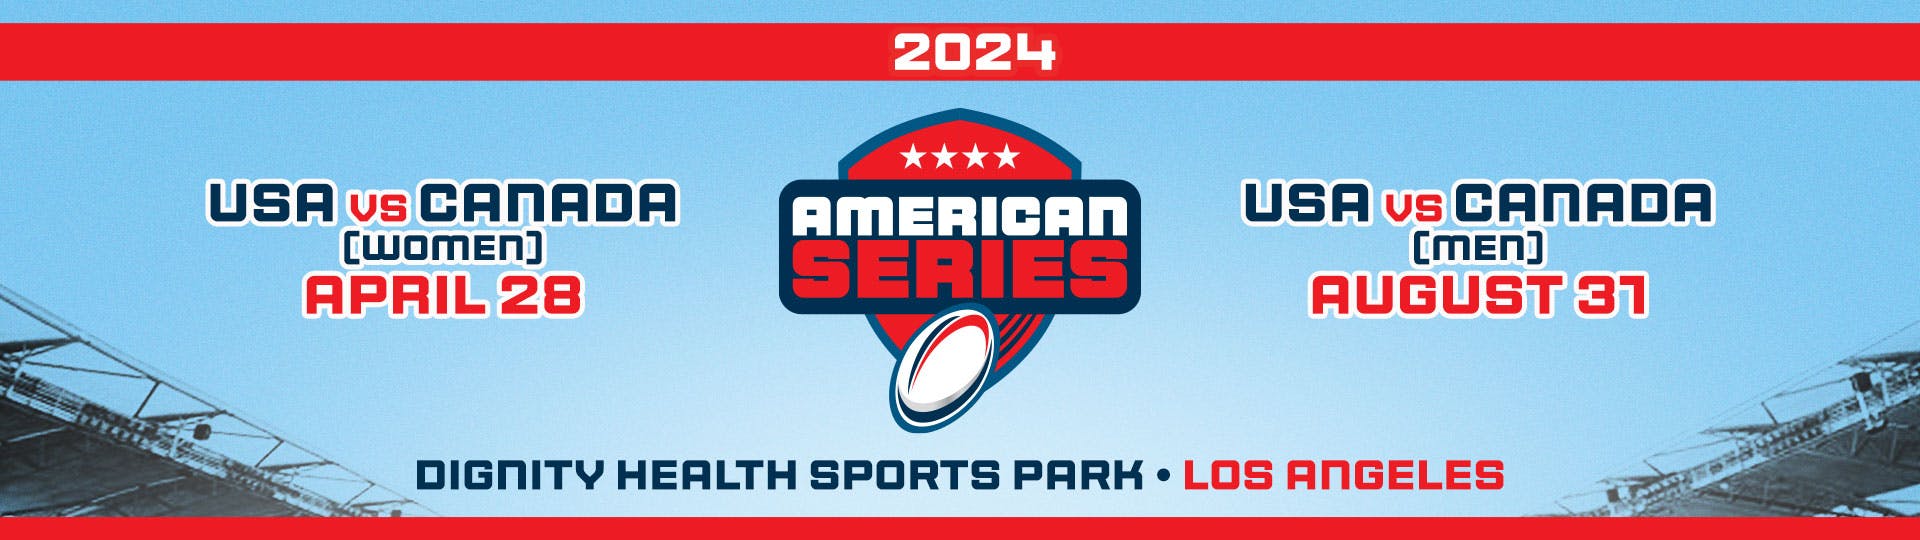 2024 American Series Homepage